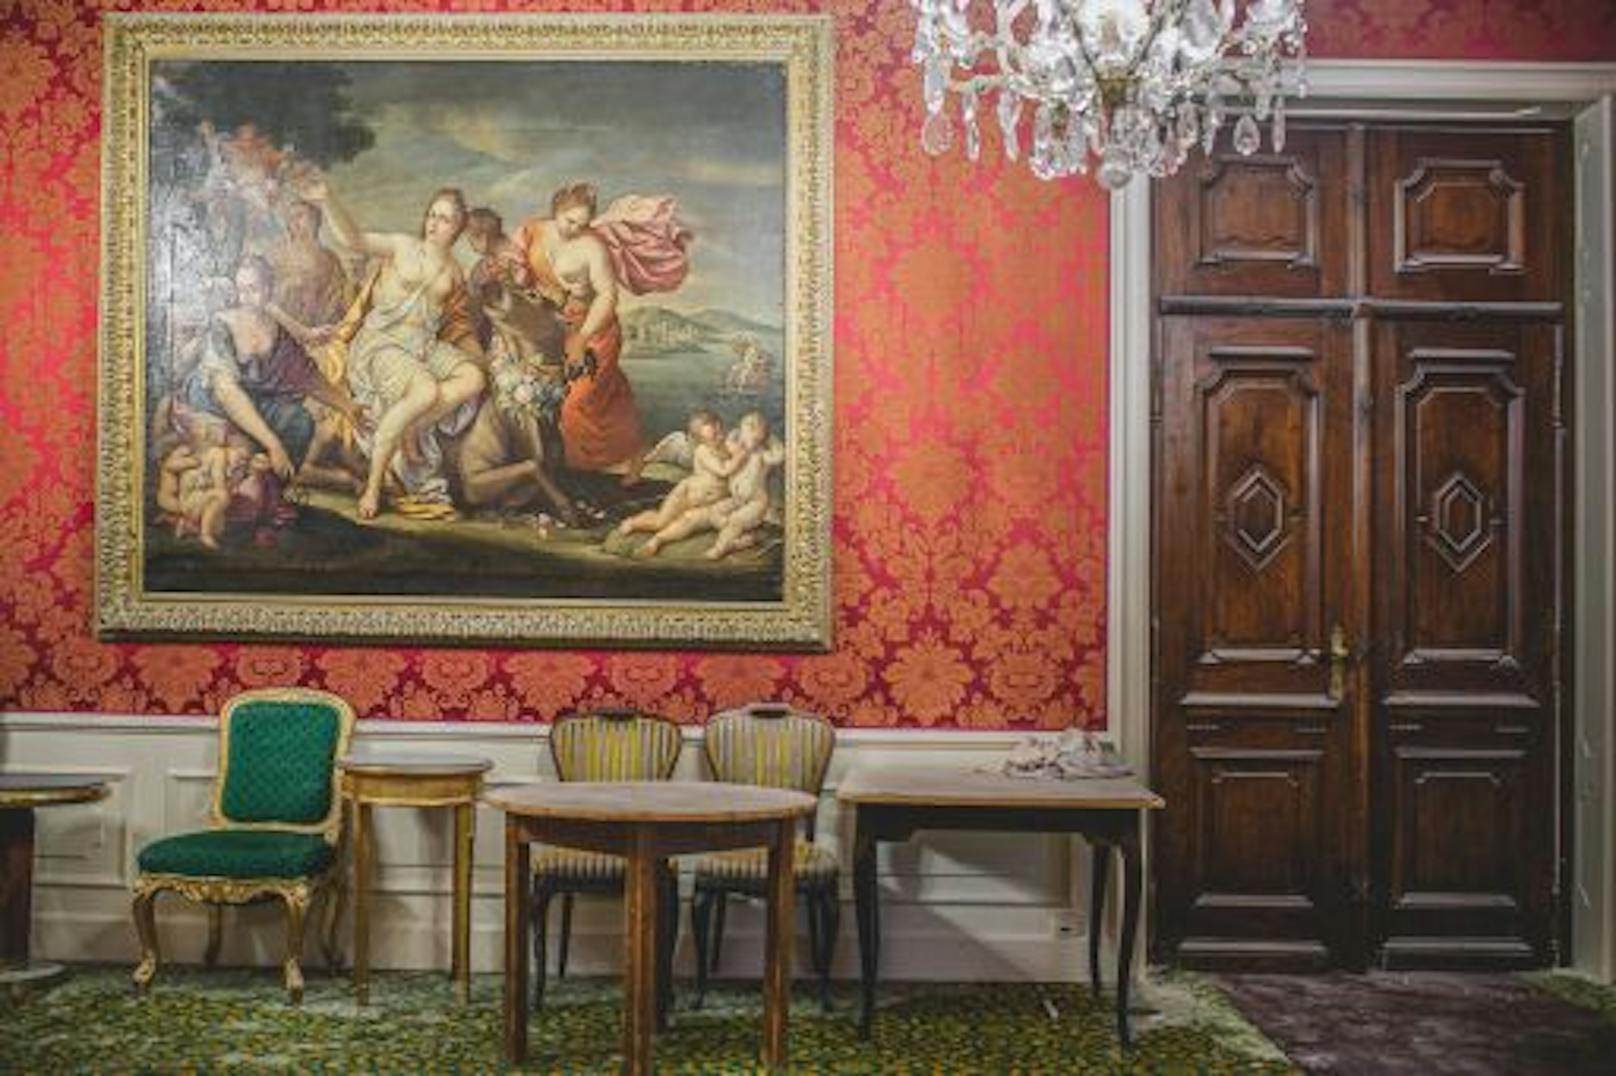 Das "Grand Hotel Europa Innsbruck" versteigert sein Inventar - darunter Gemälde, die Ausstattung der Hotelküche oder Jagdtrophäen.